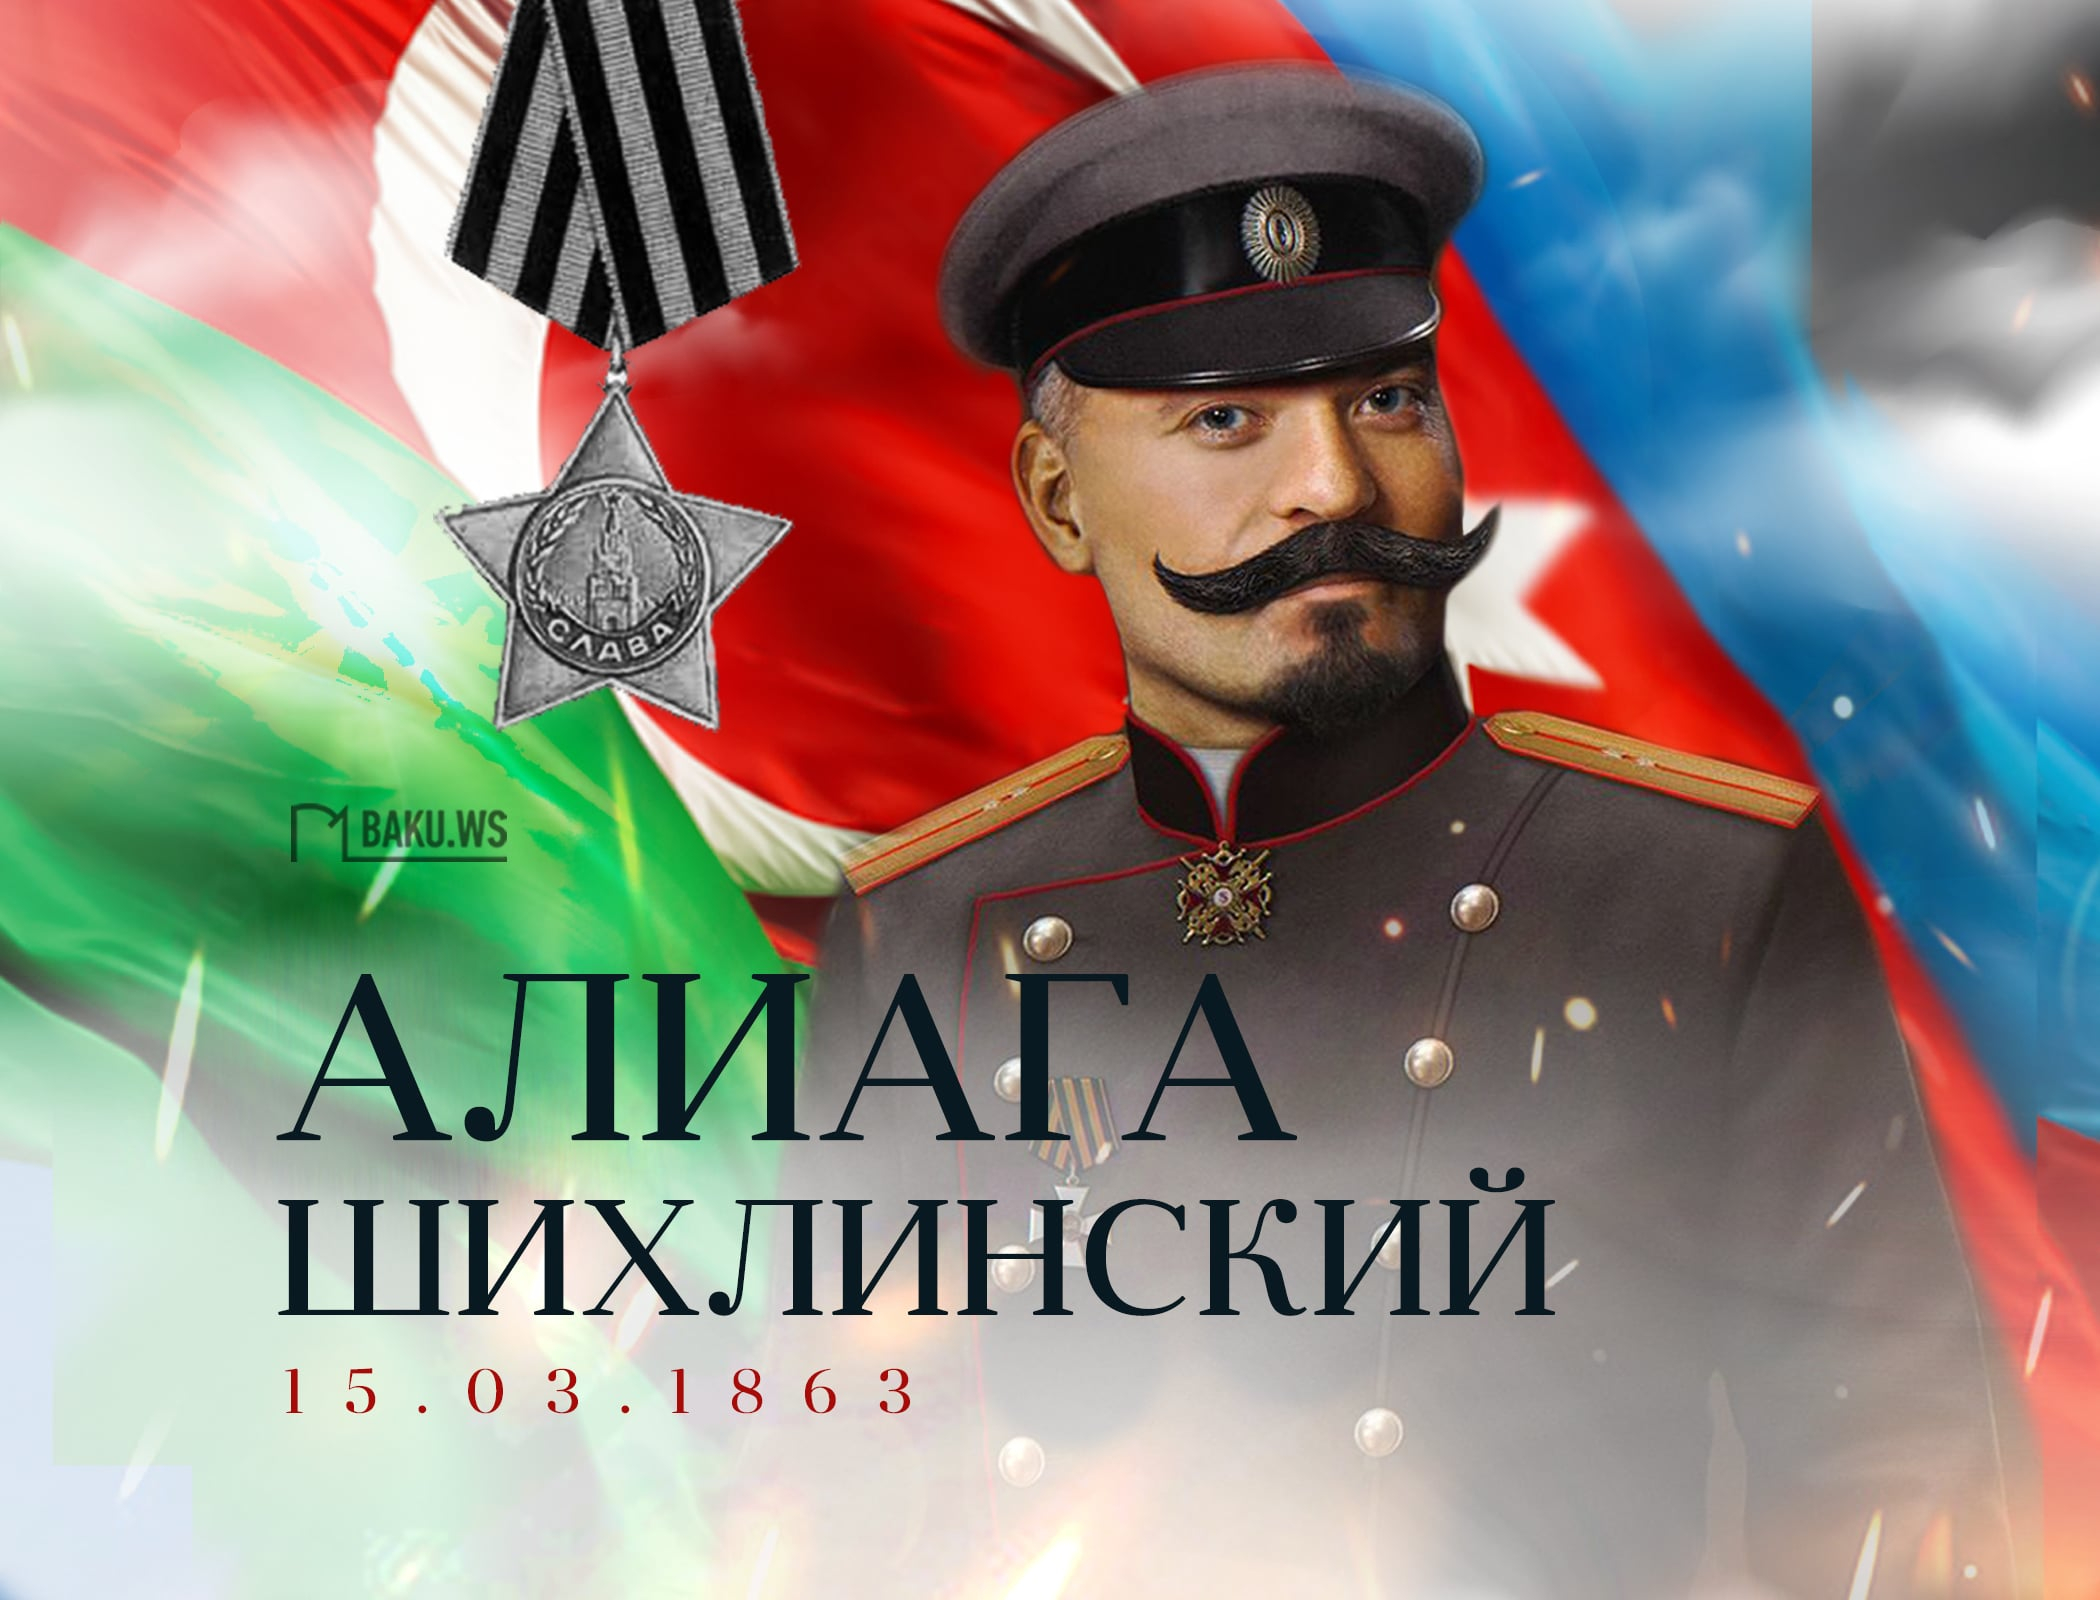 Сегодня день рождения "бога артиллерии" Алиаги Шихлинского